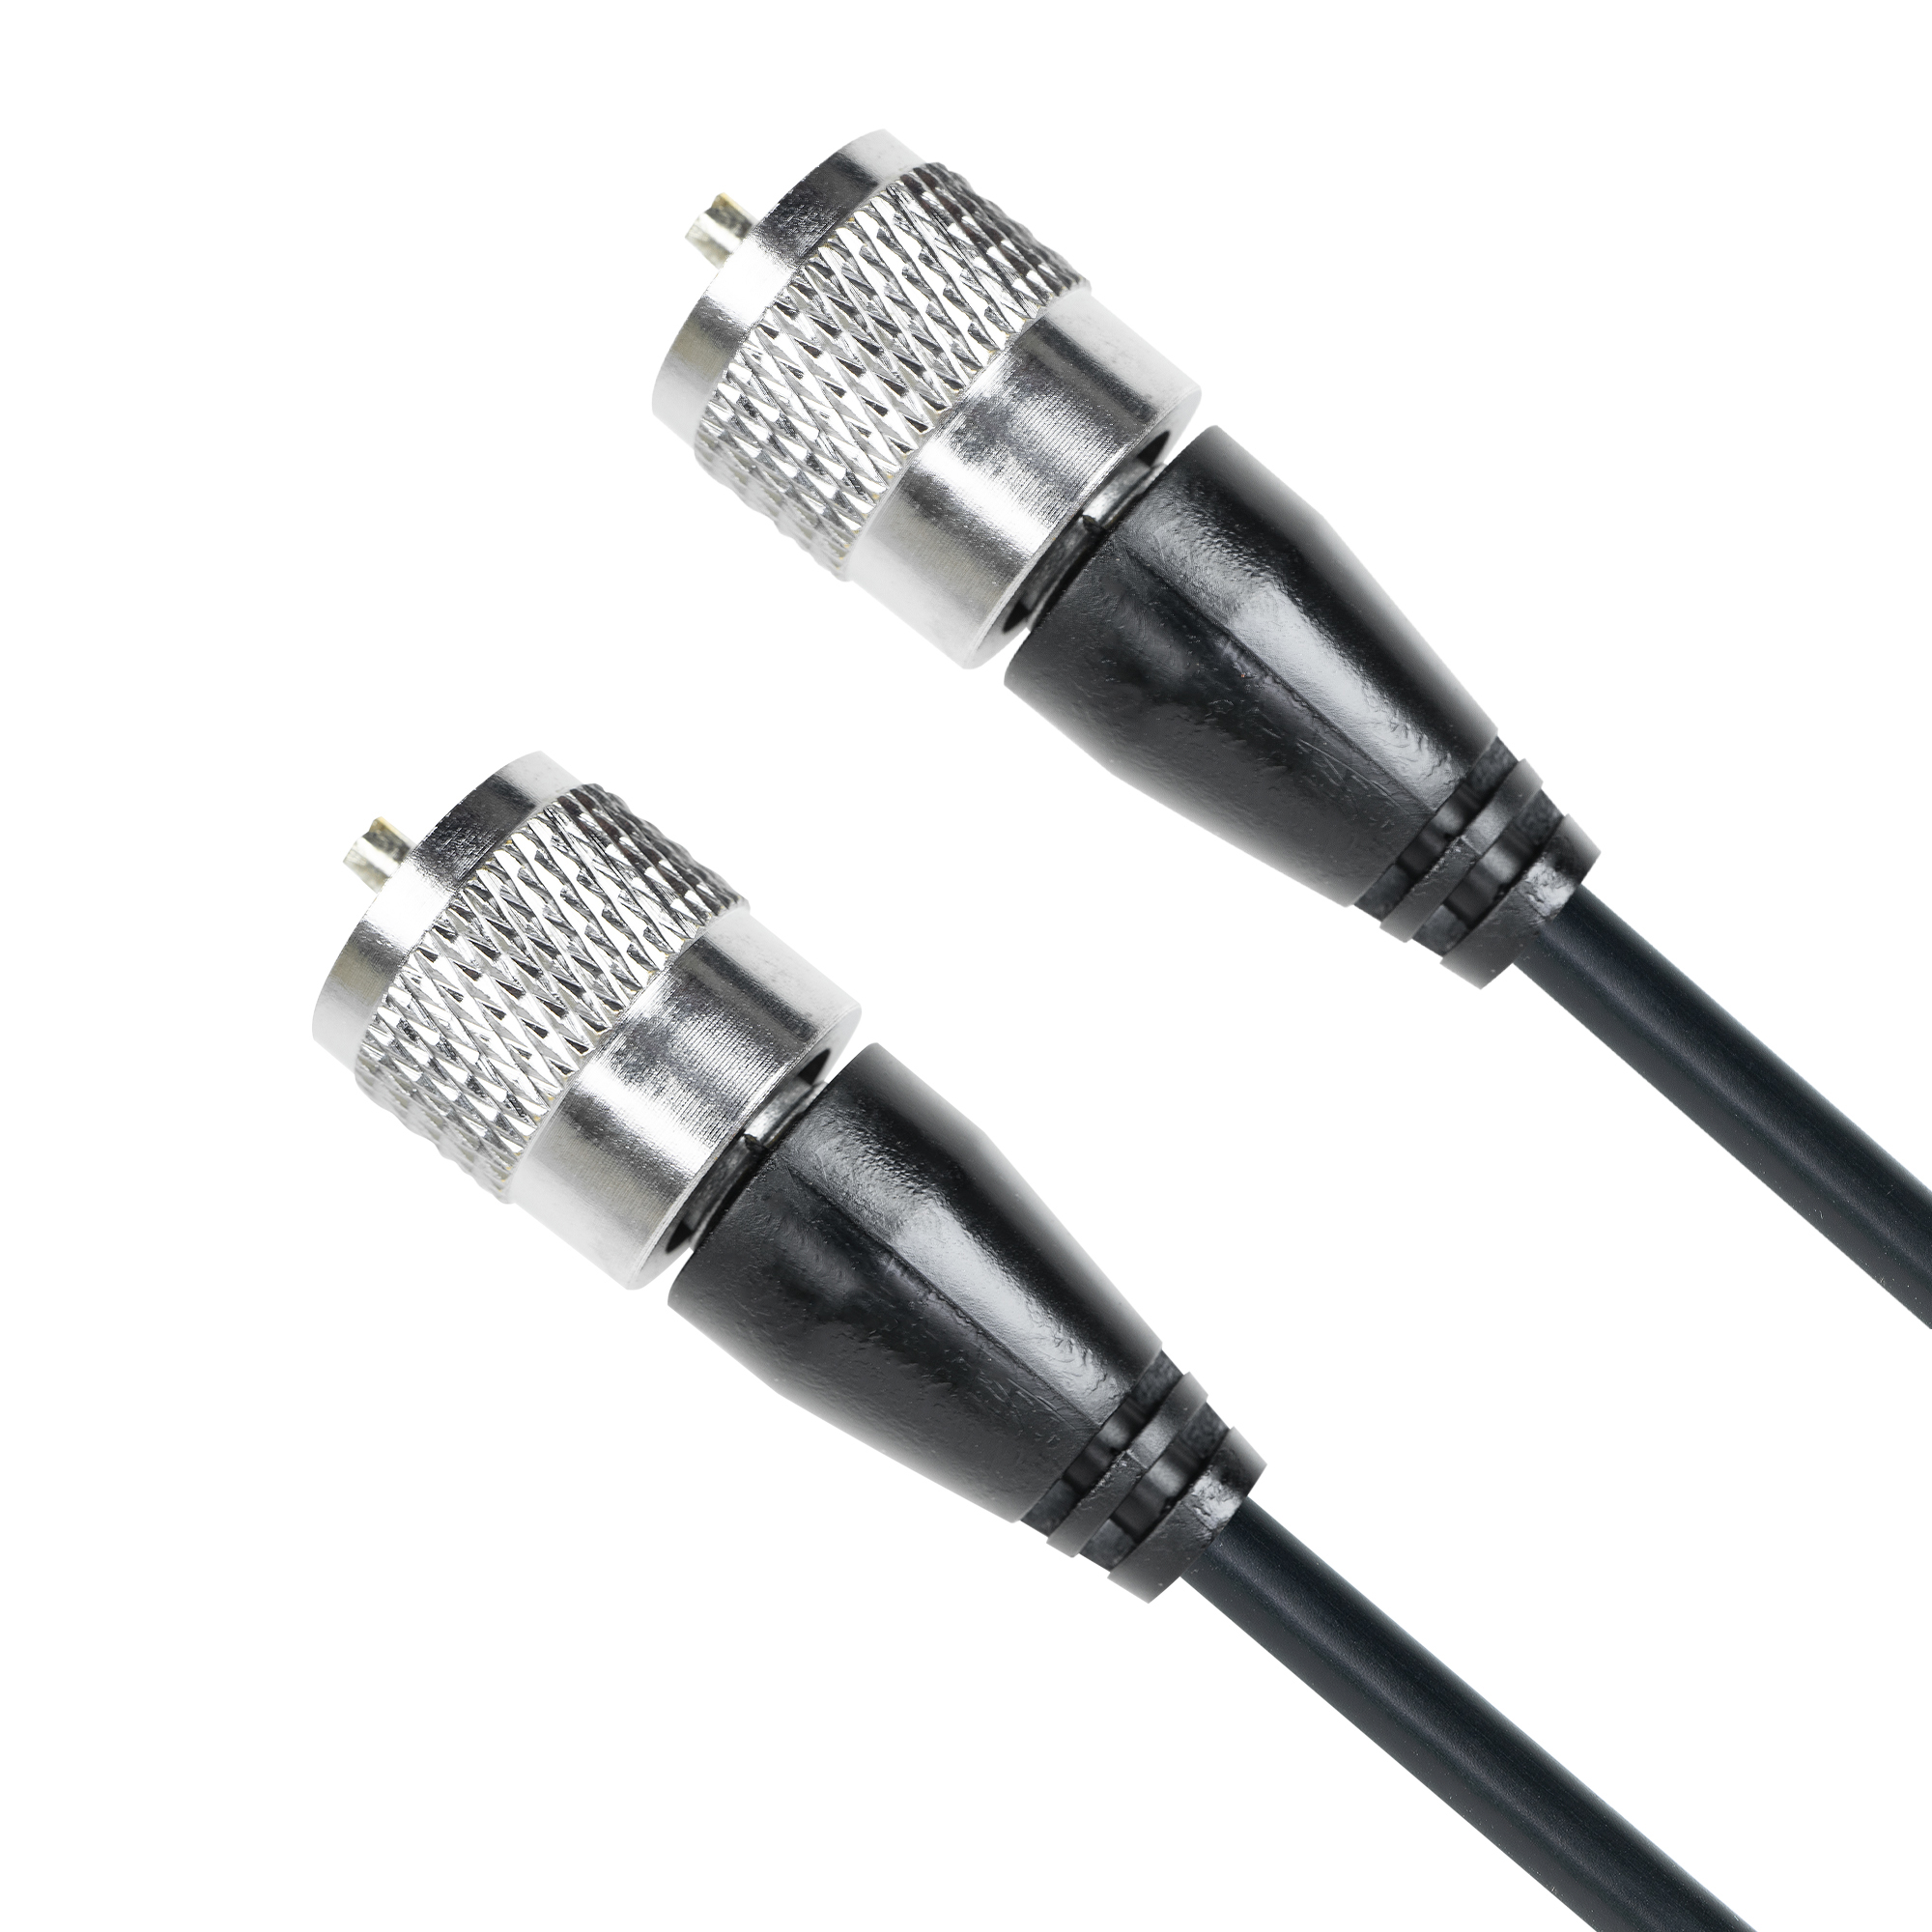 Cablu de legatura PNI R150 cu mufe PL259 lungime 1.5m image3